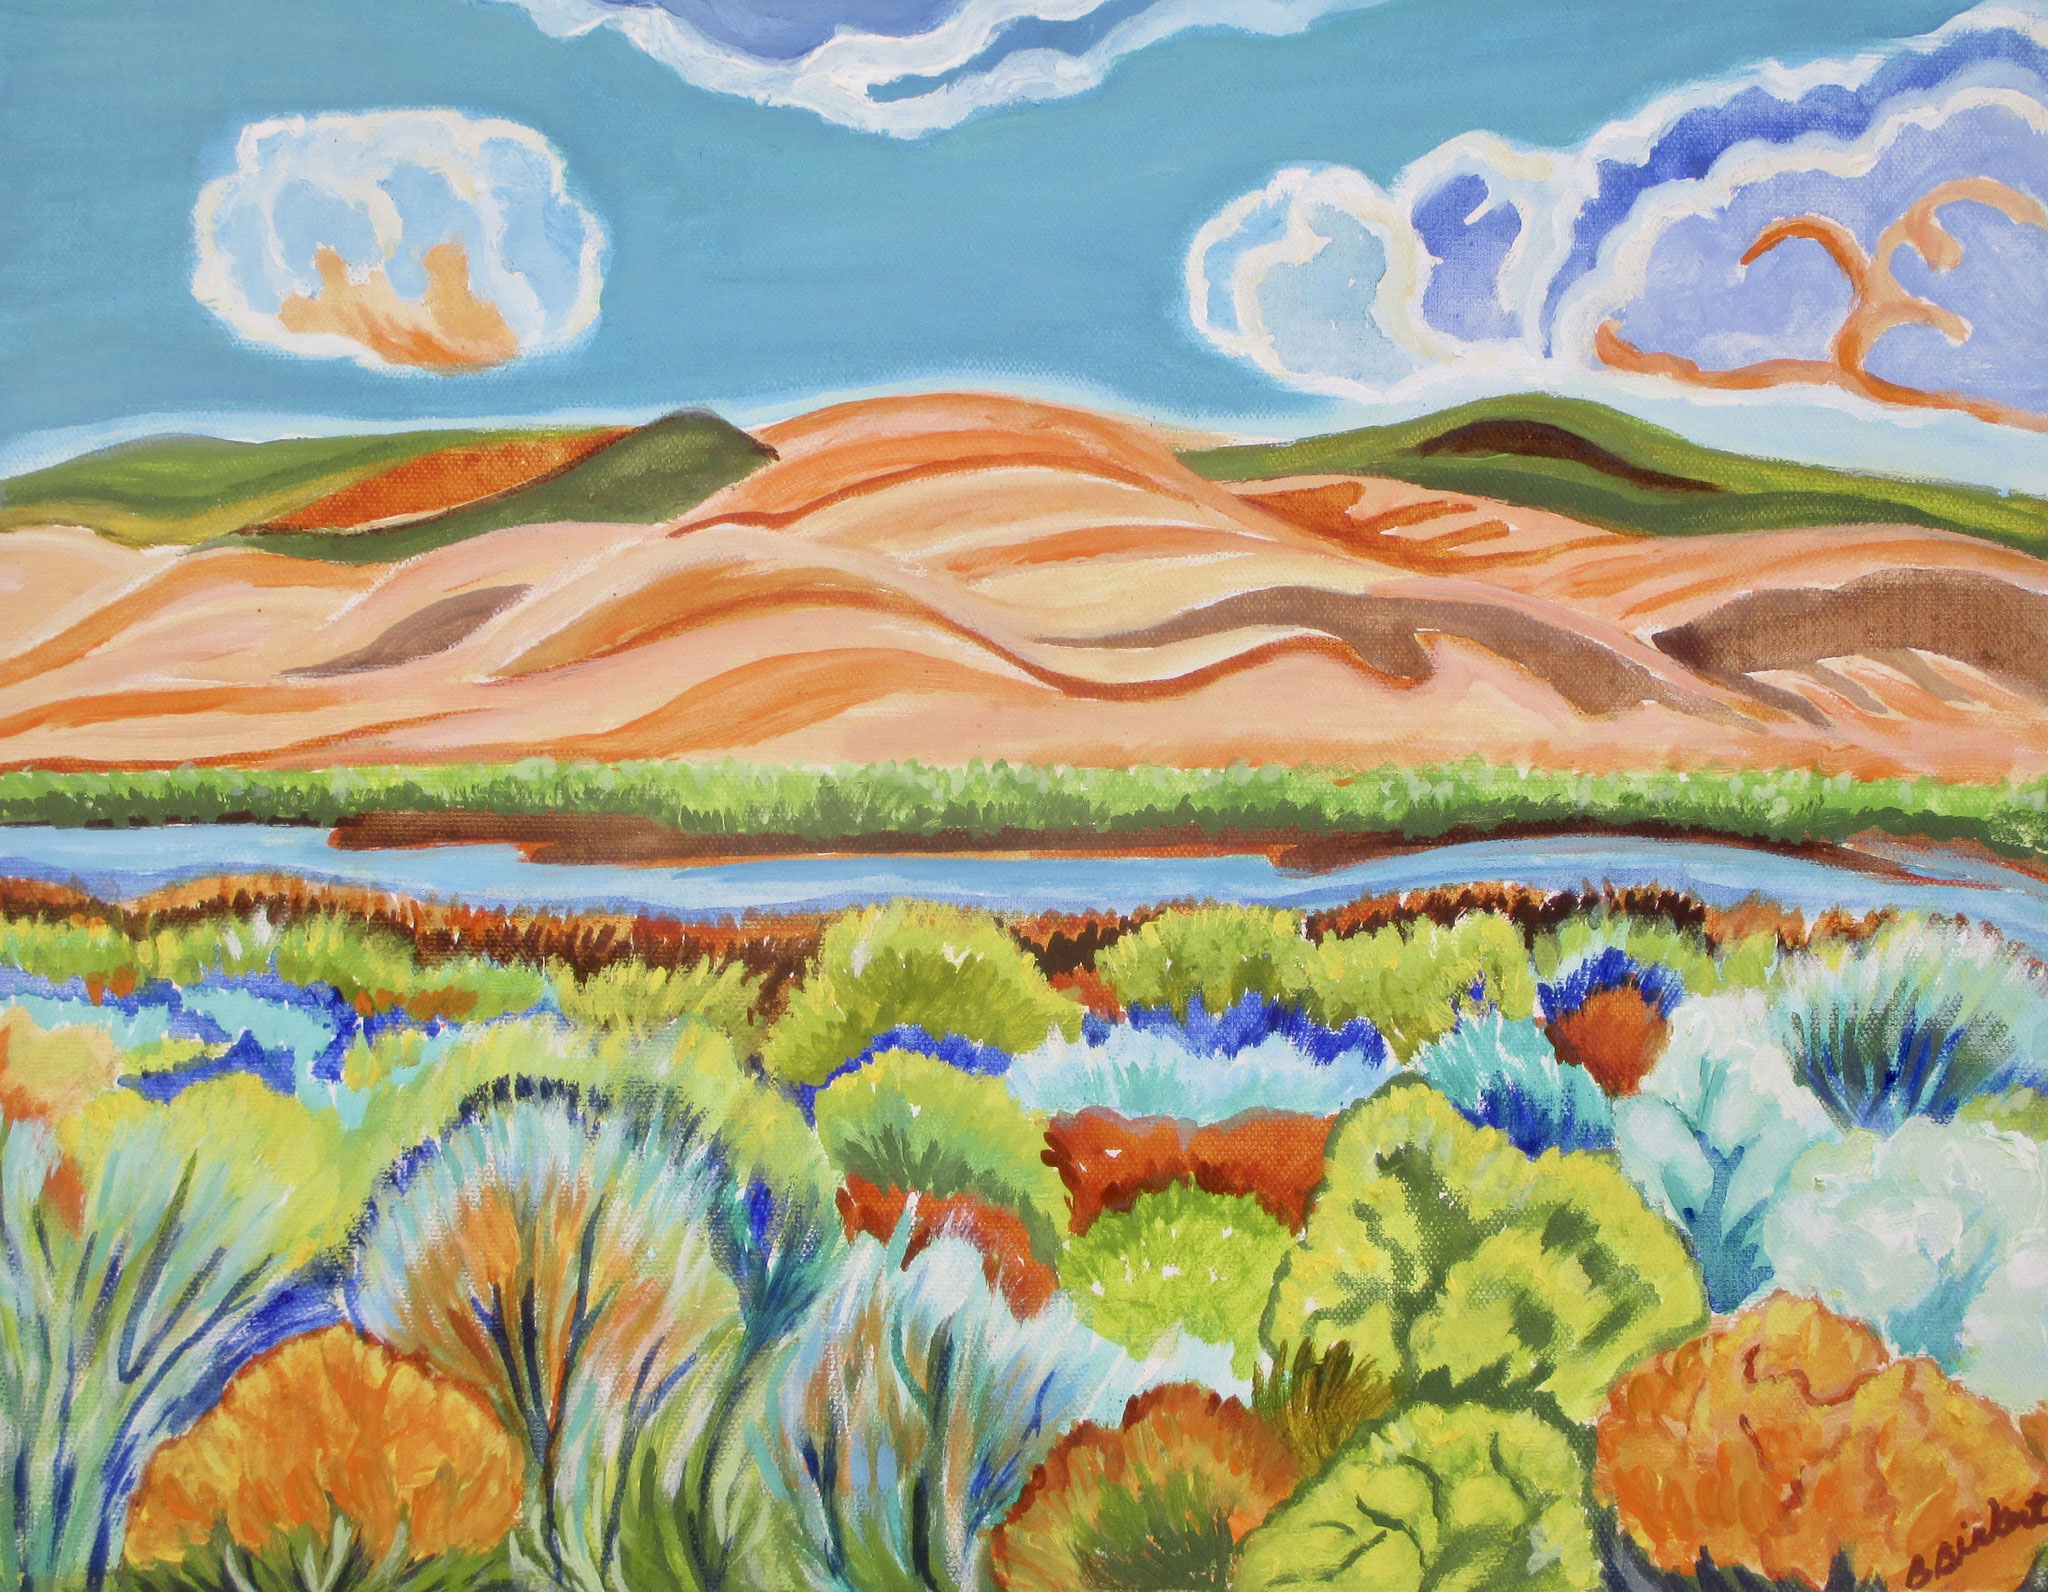 Santa Fe Spring, oil on canvas, 18 x 14